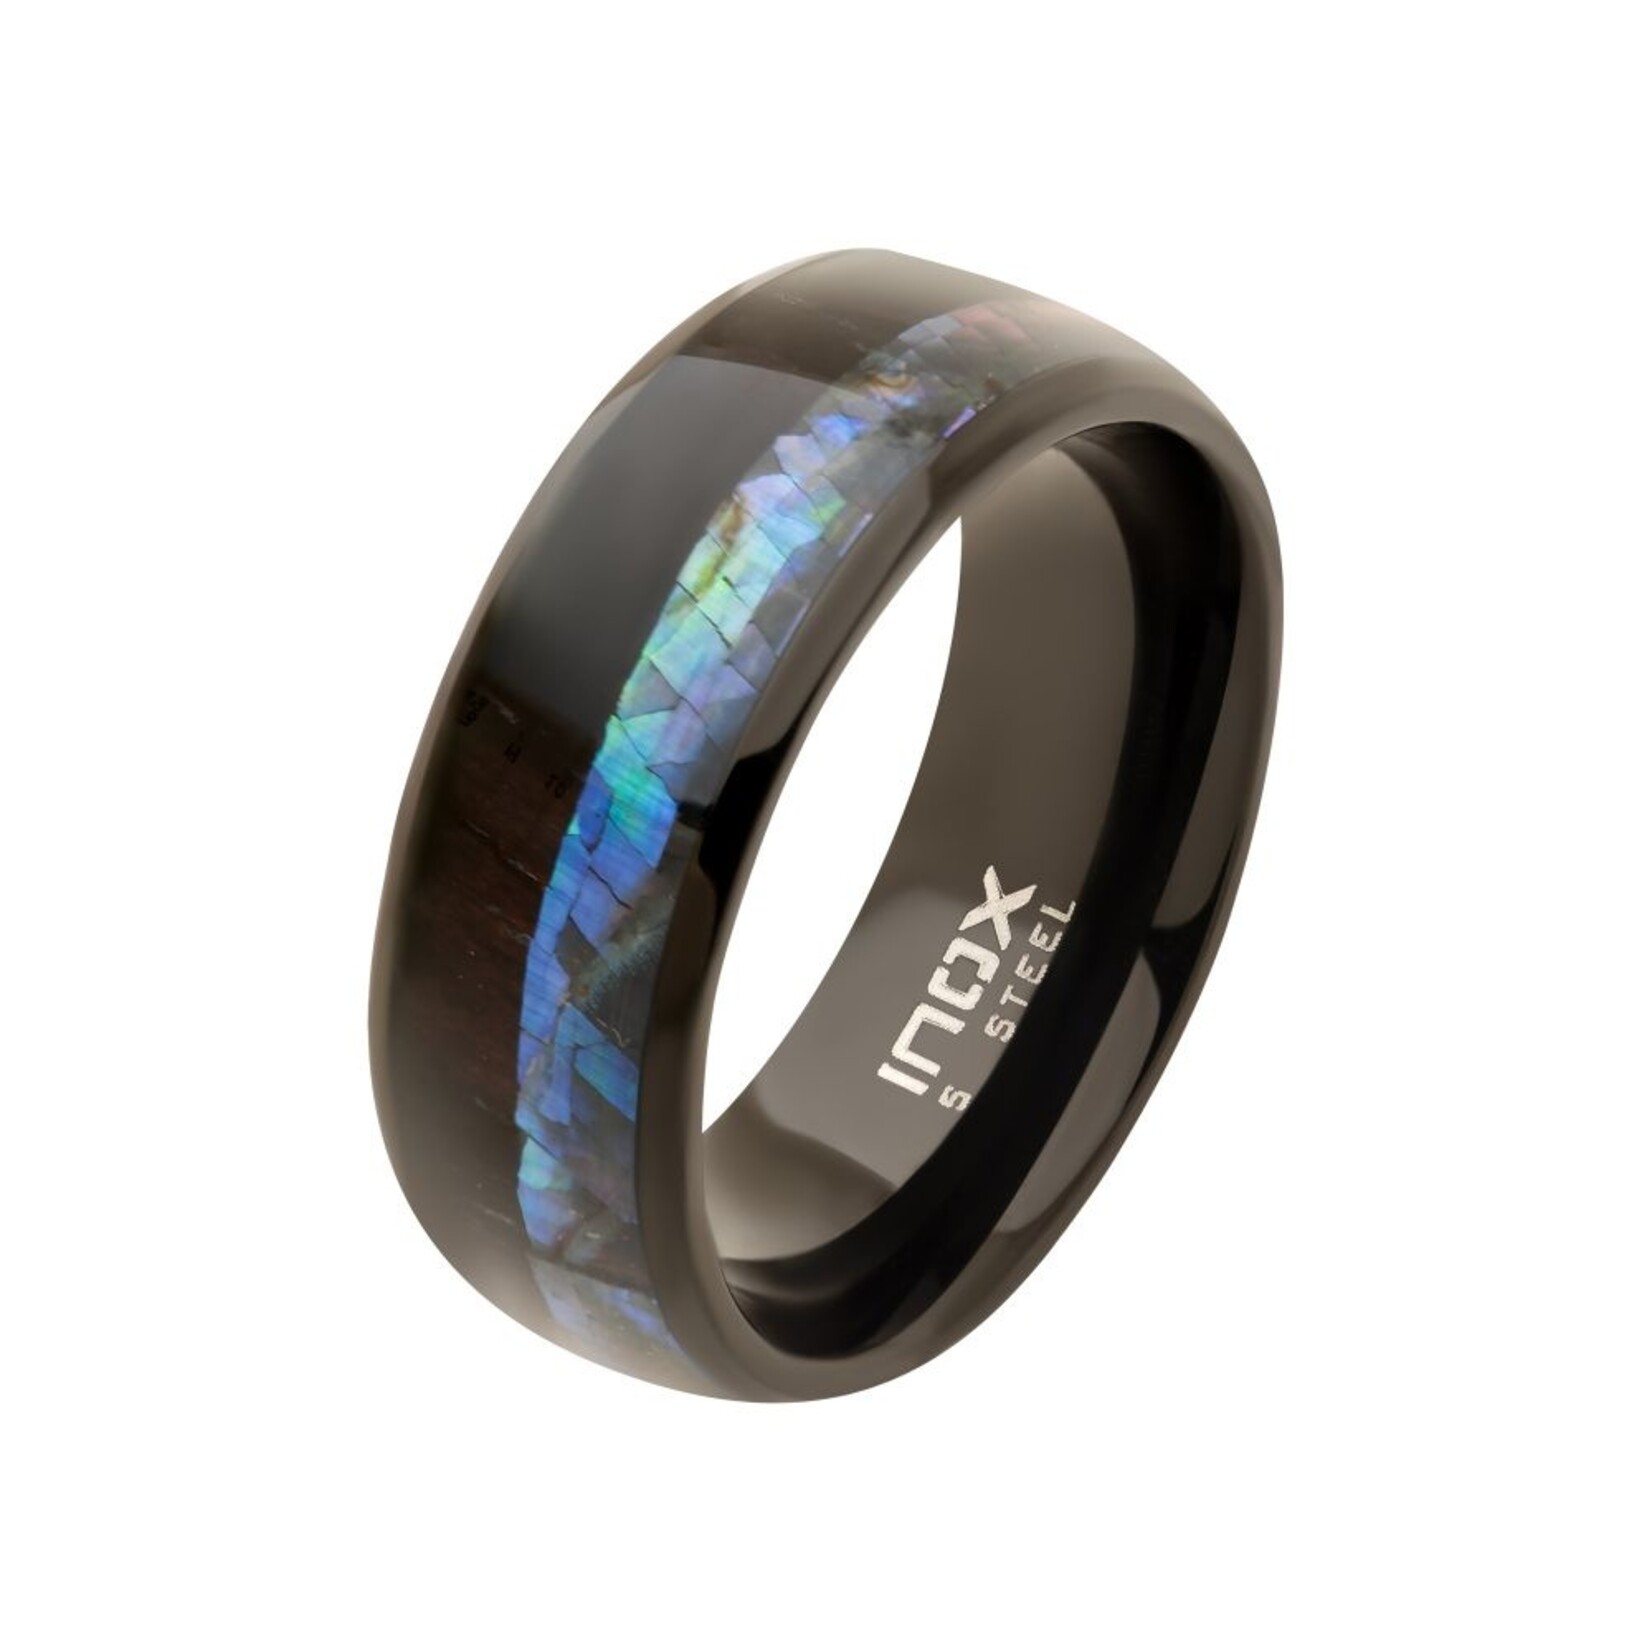 Inox Black IP Abalone Shell & Ebony Wood Inlay Ring